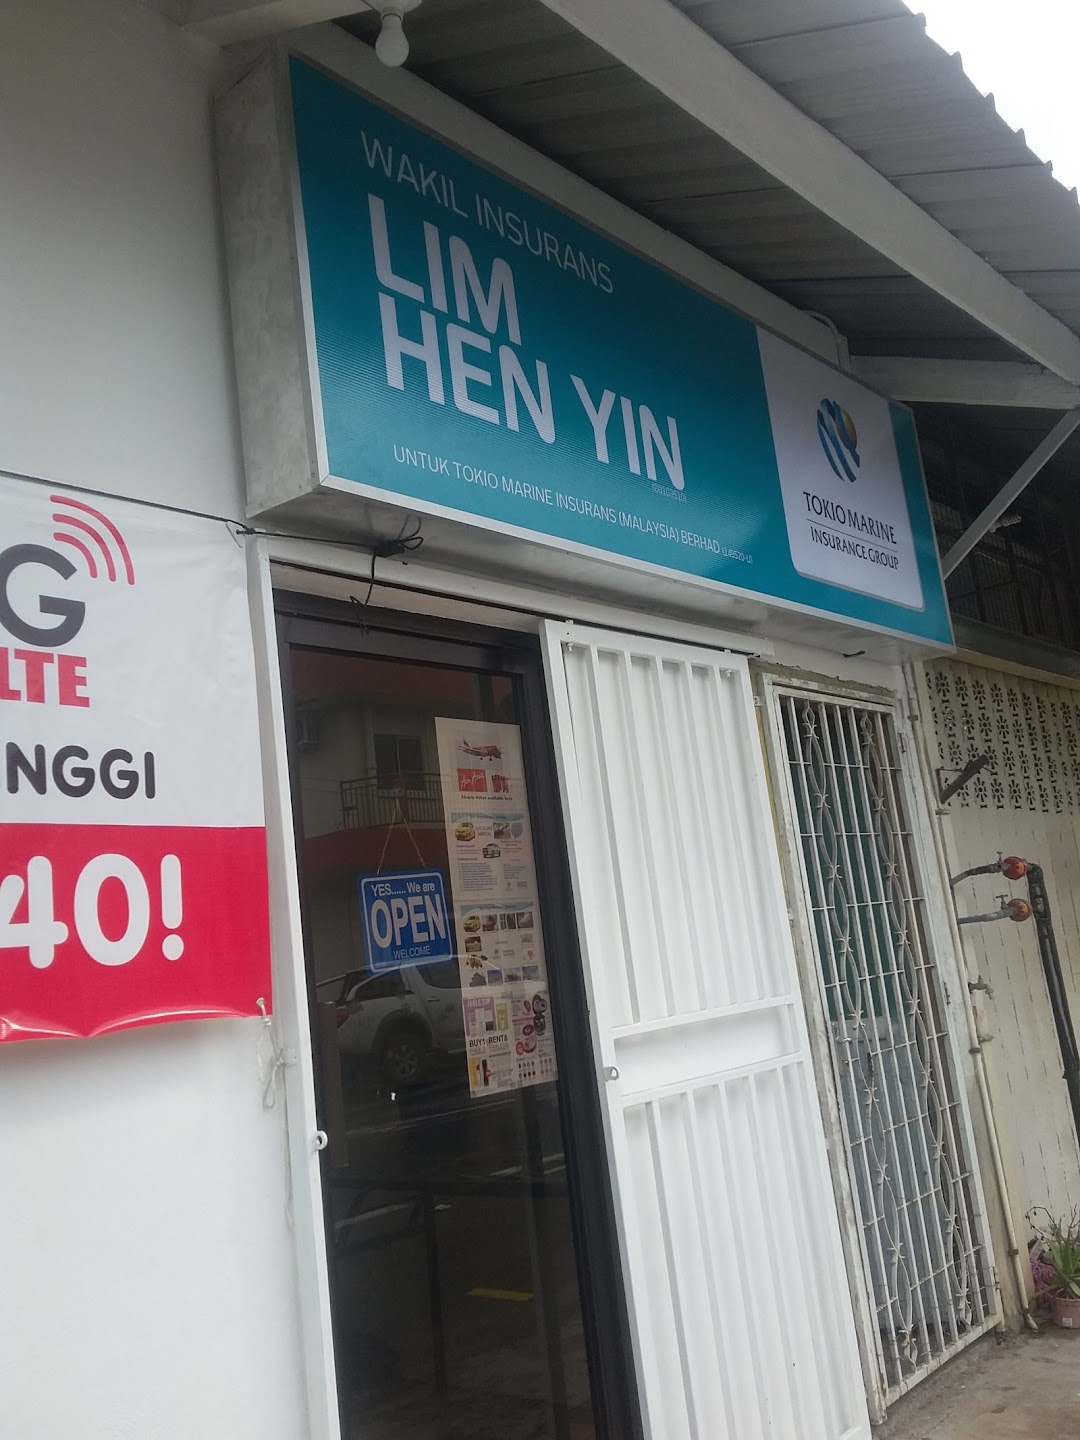 Lim Hen Yin